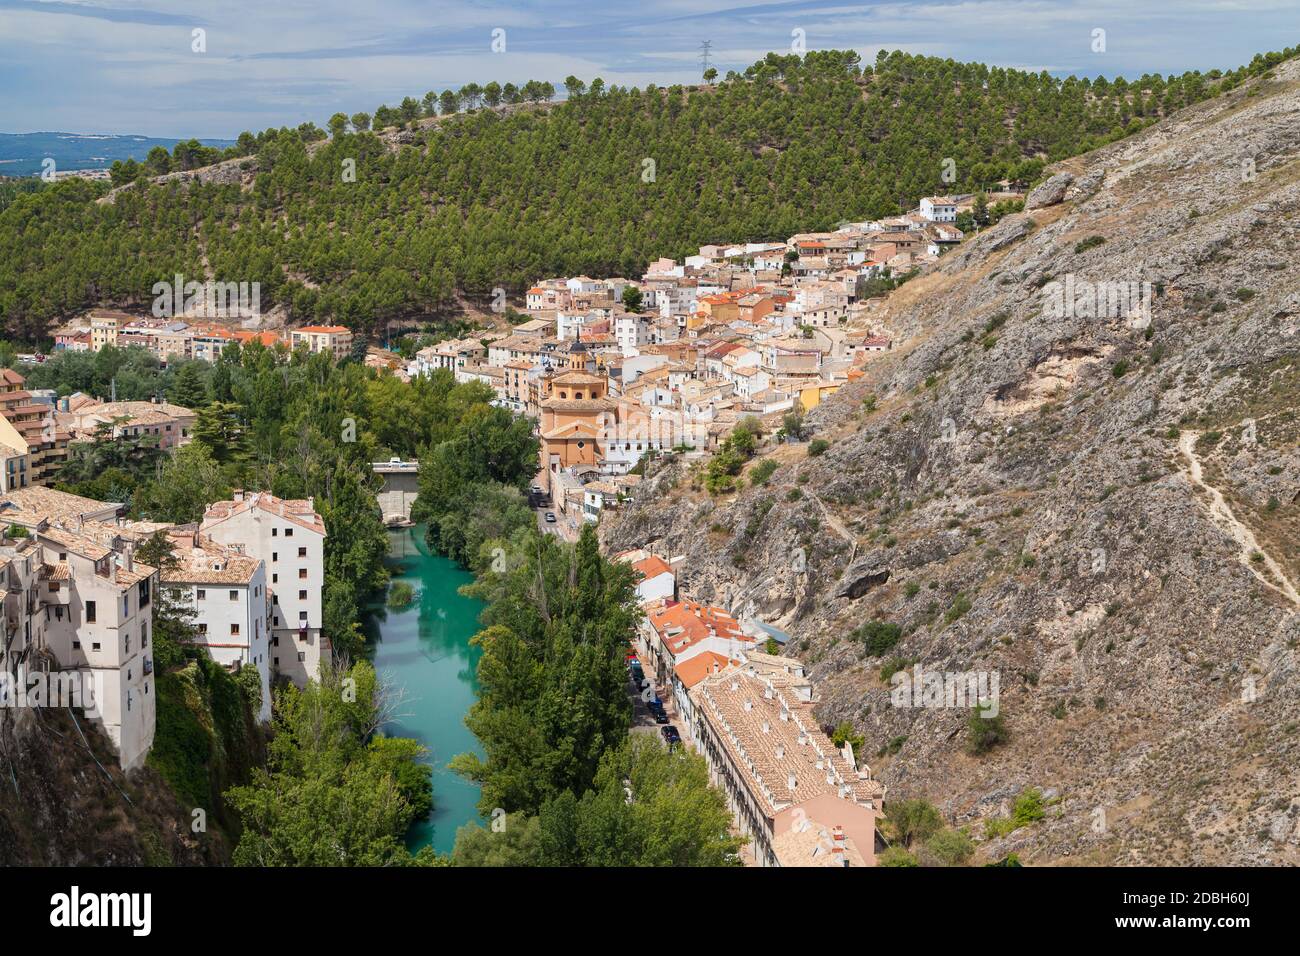 Neighborhood of San Anton in Cuenca, Spain. Stock Photo